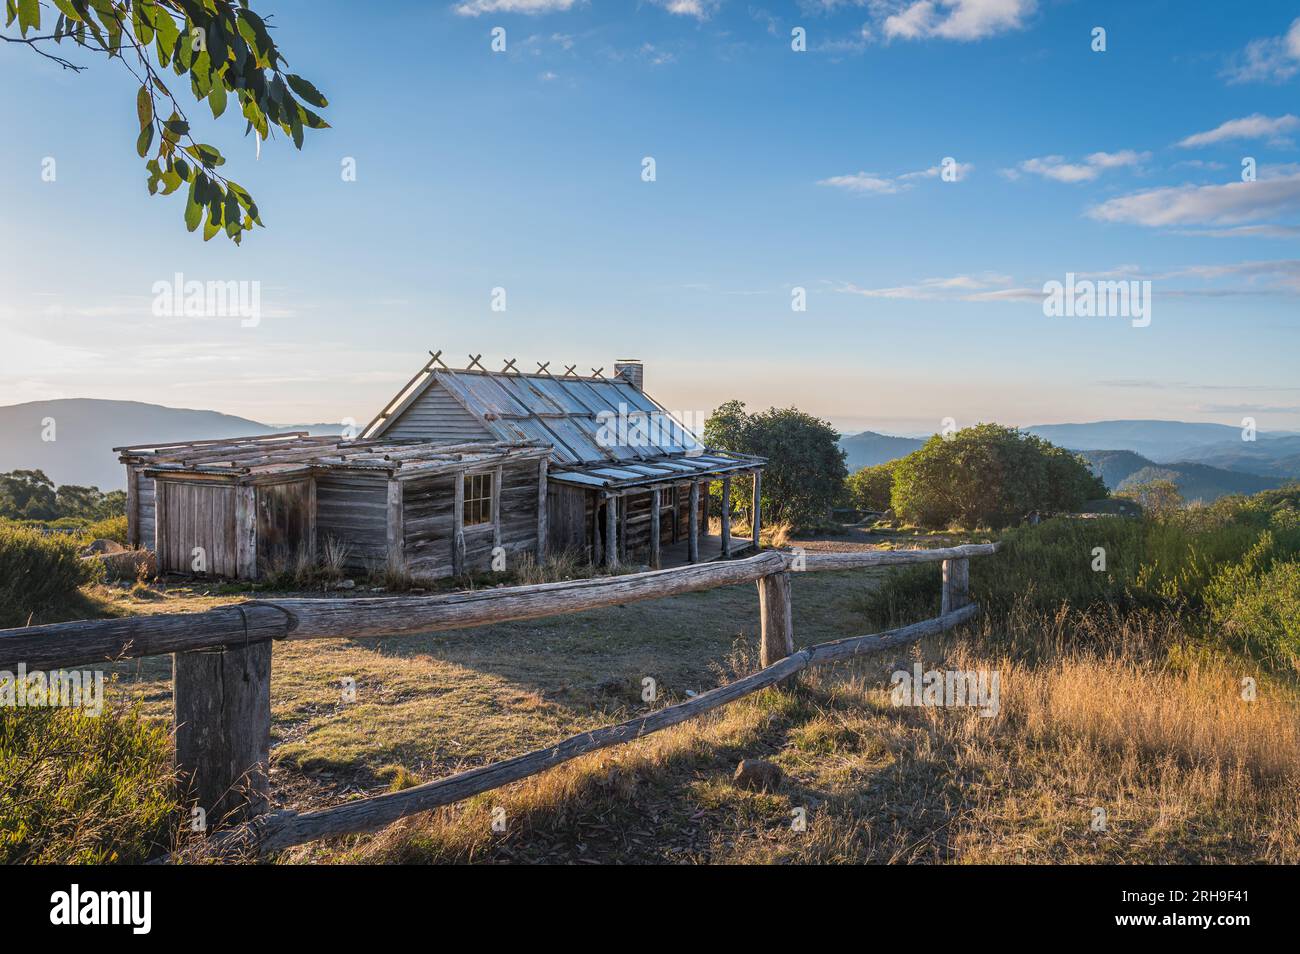 Craig's Hut sul Monte Sterling è il sito del film australiano "The Man from Snowy River" ambientato sulle Snowy Mountains a Victoria, Australia. Foto Stock